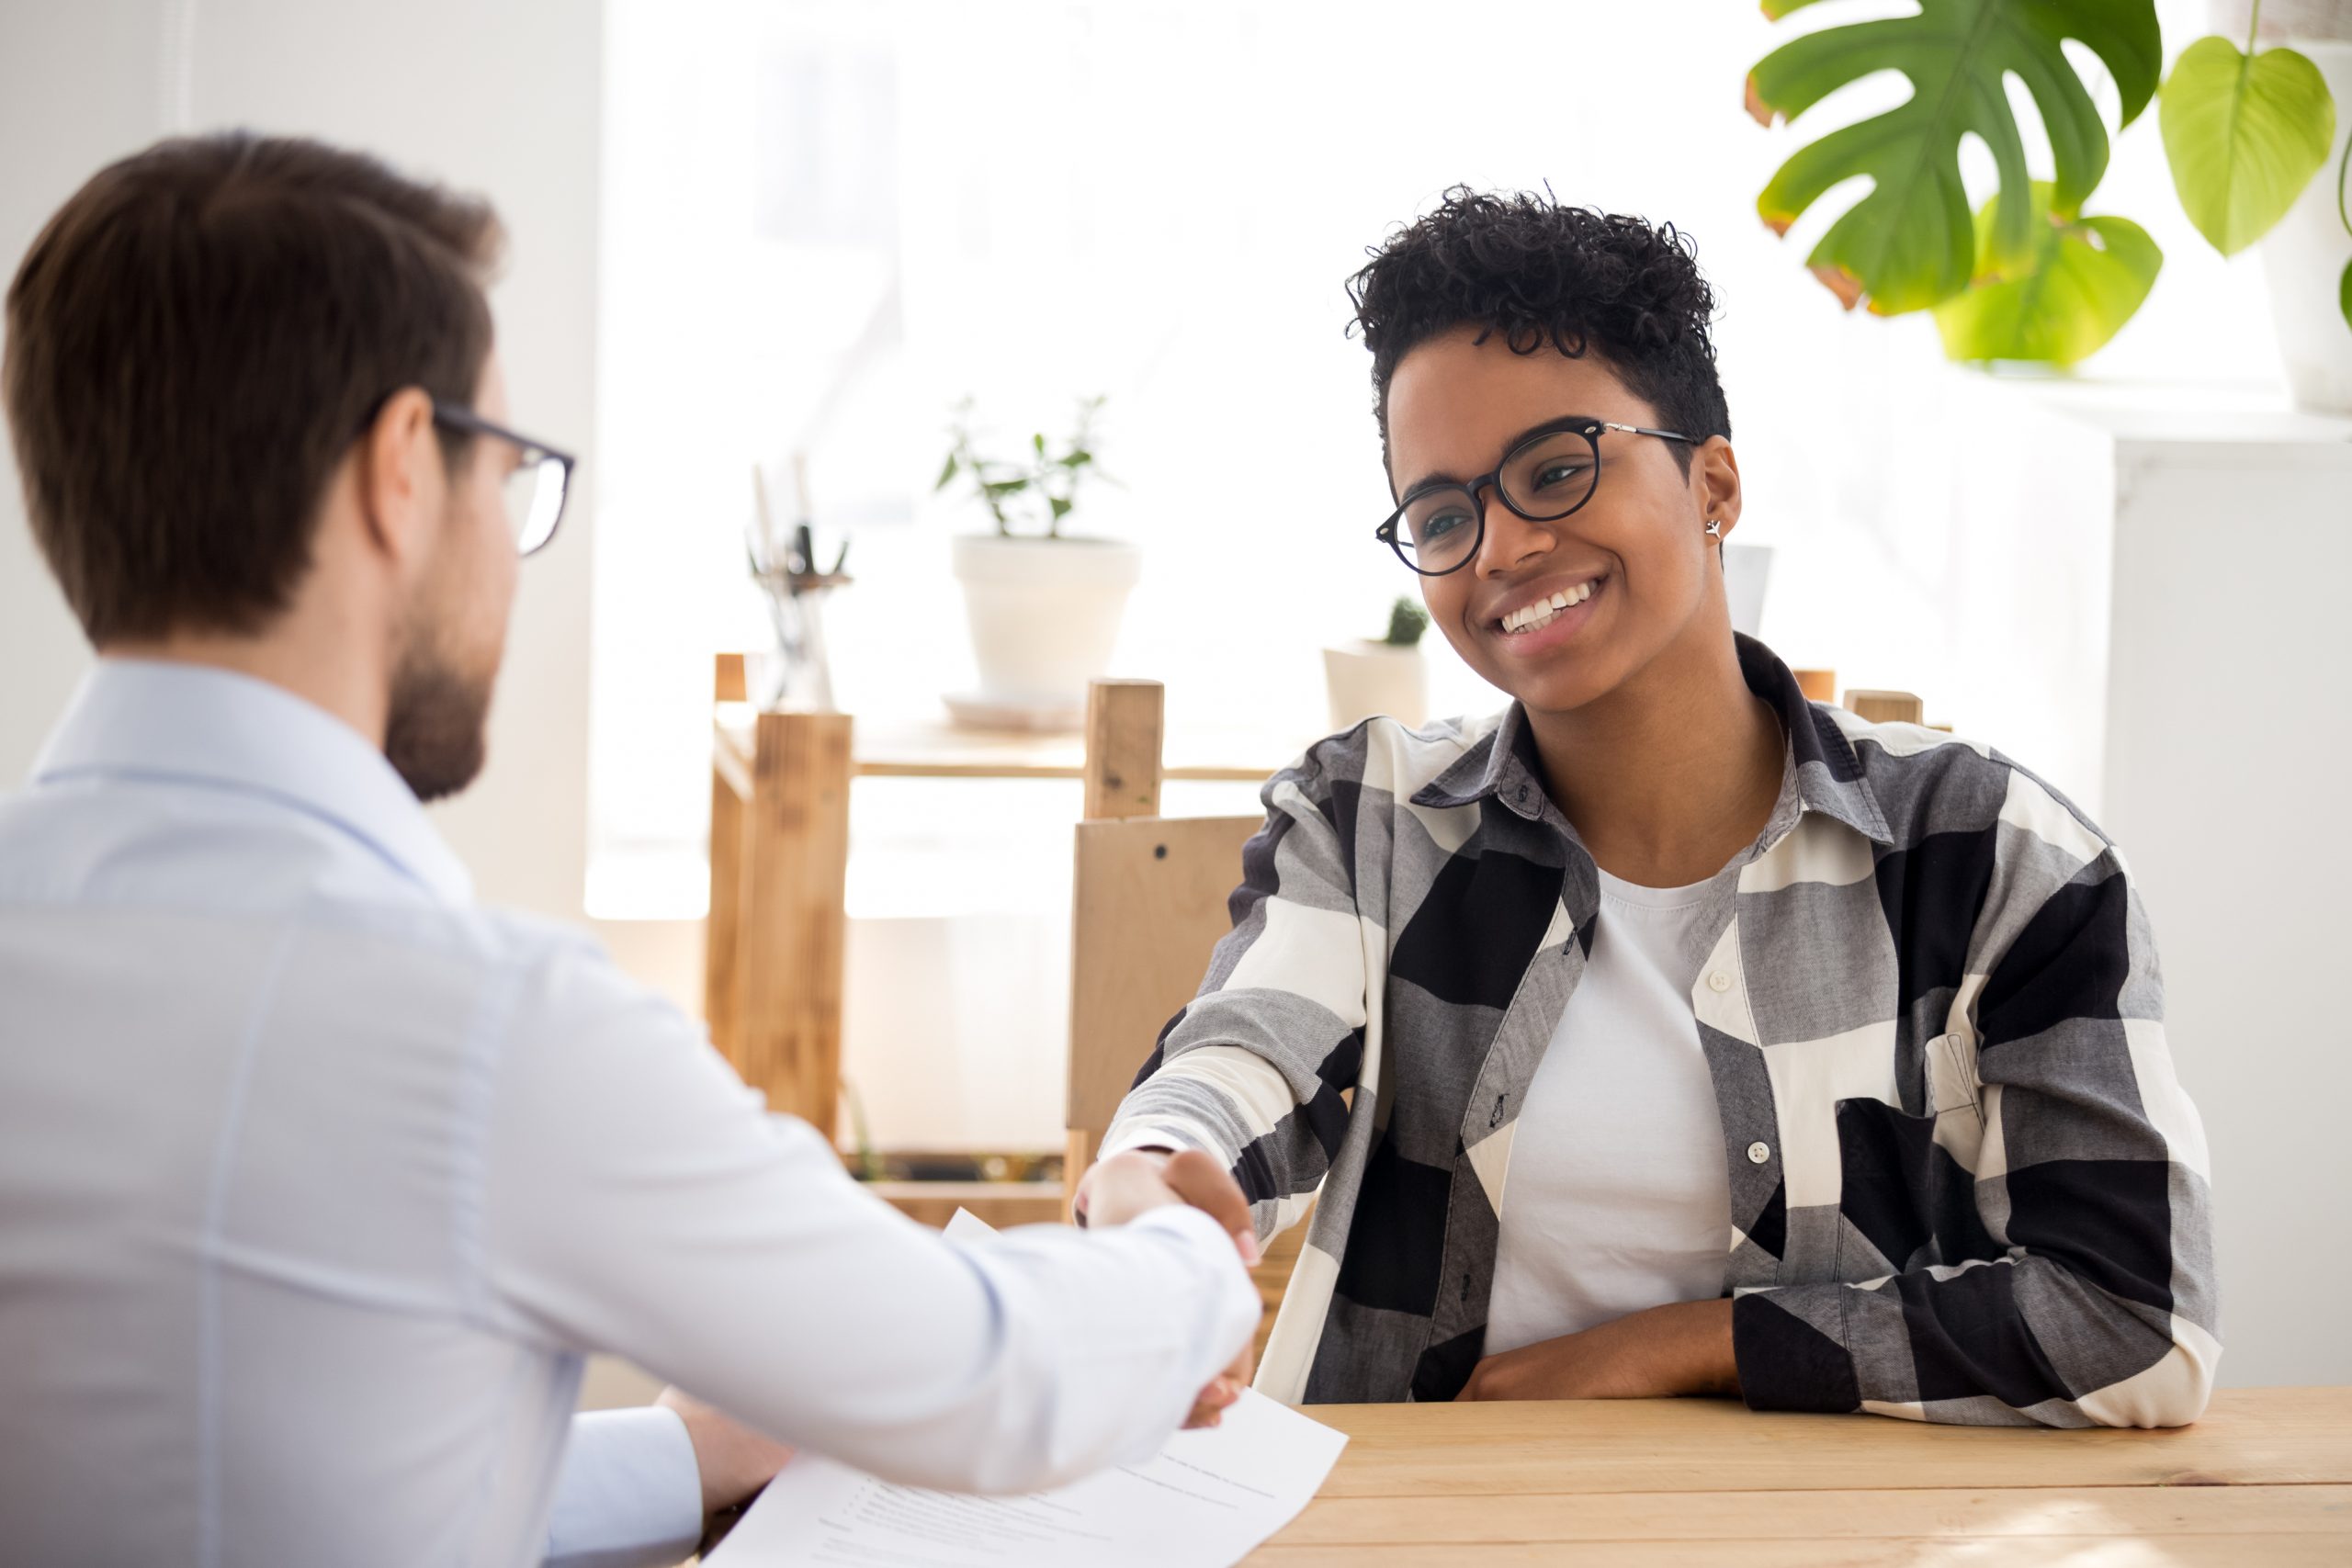 Estas 10 respostas vão te ajudar na entrevista de emprego